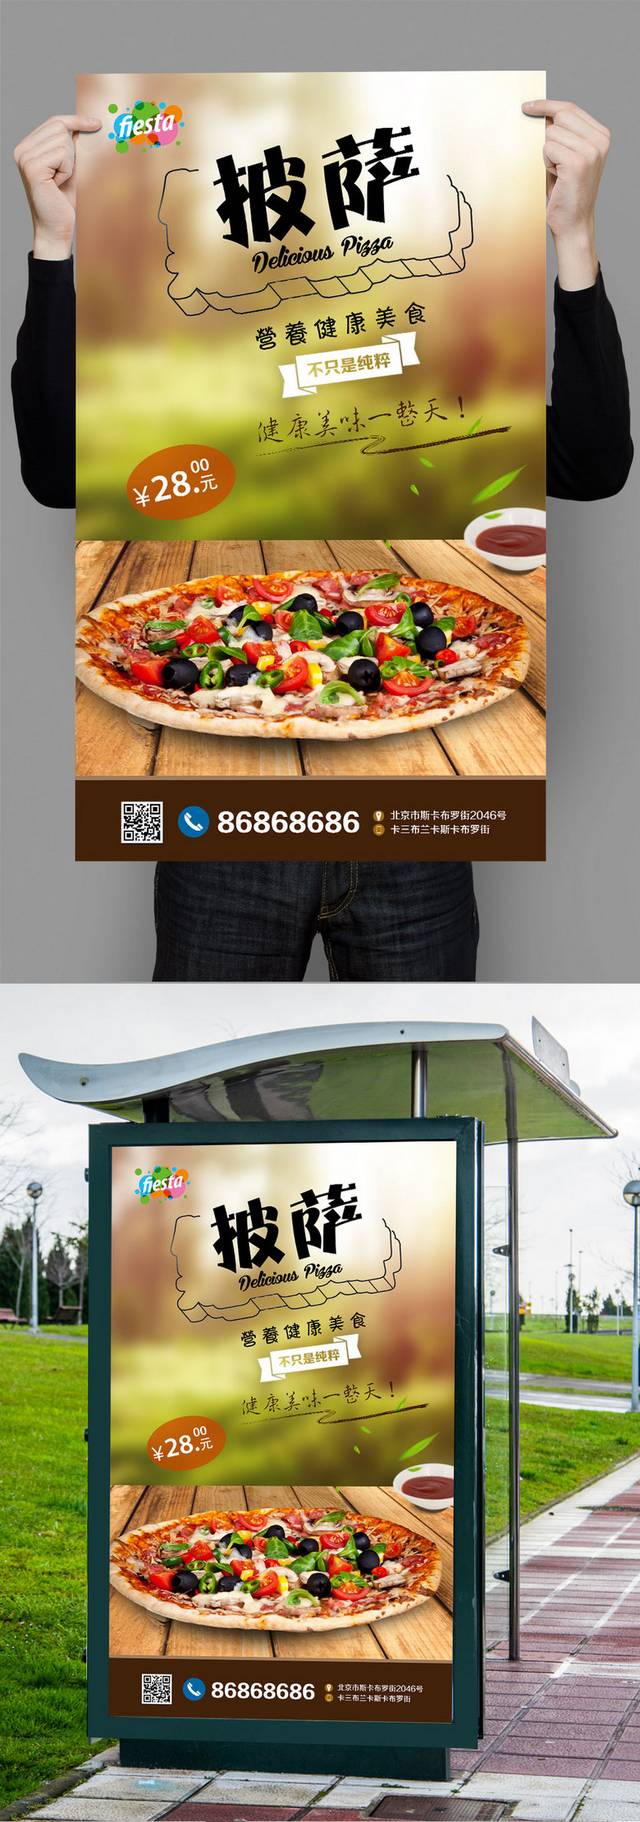 清新披萨宣传海报设计模板